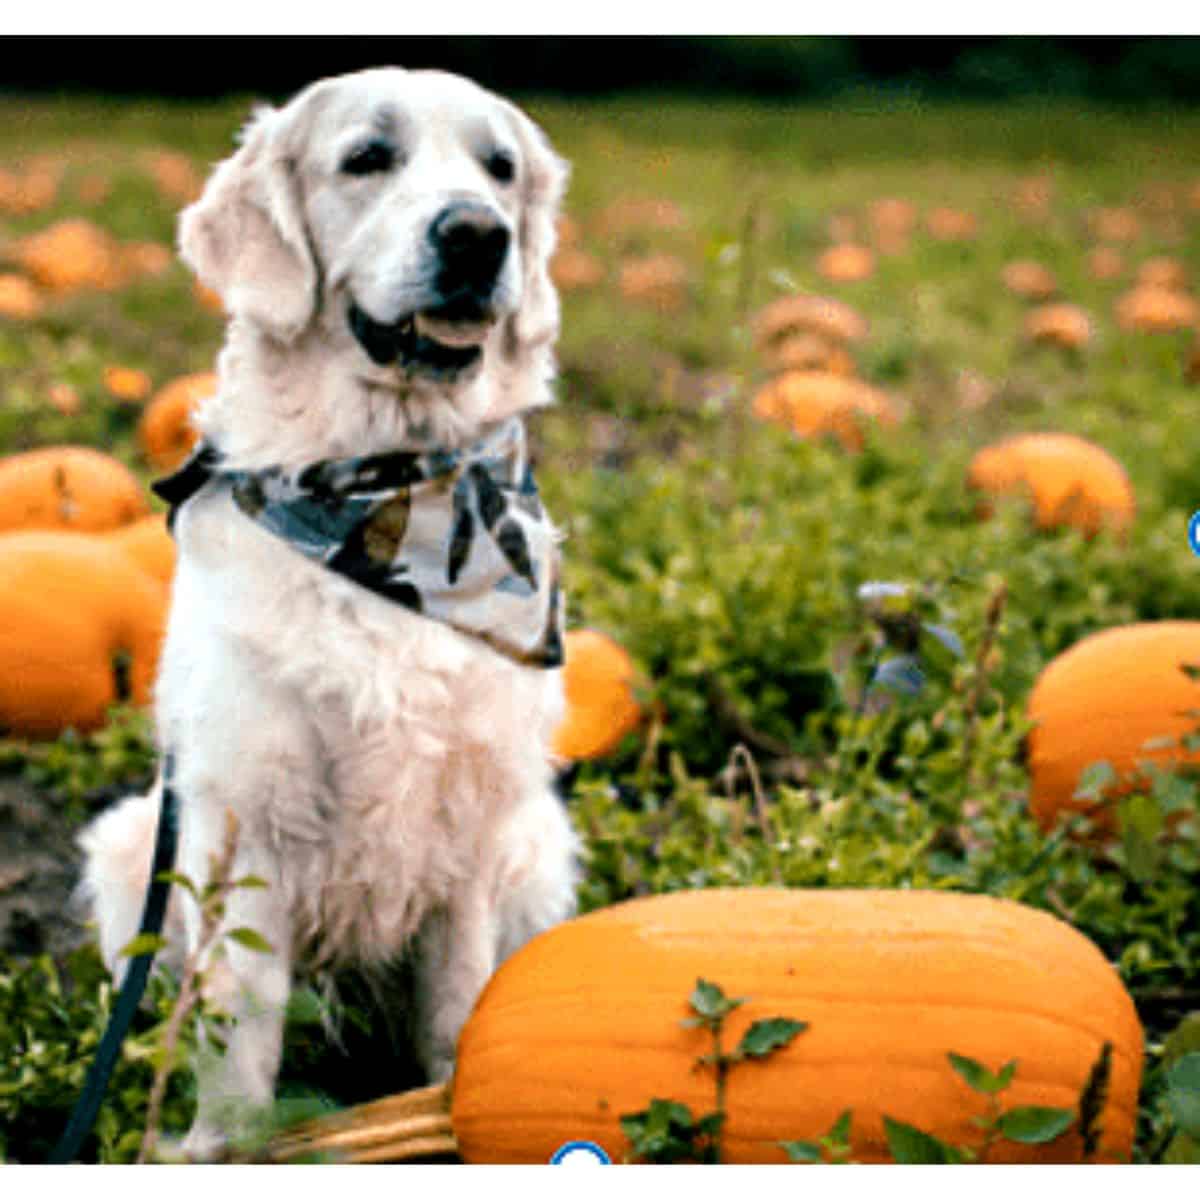 Golden retriever in a bandana in a pumpkin patch.